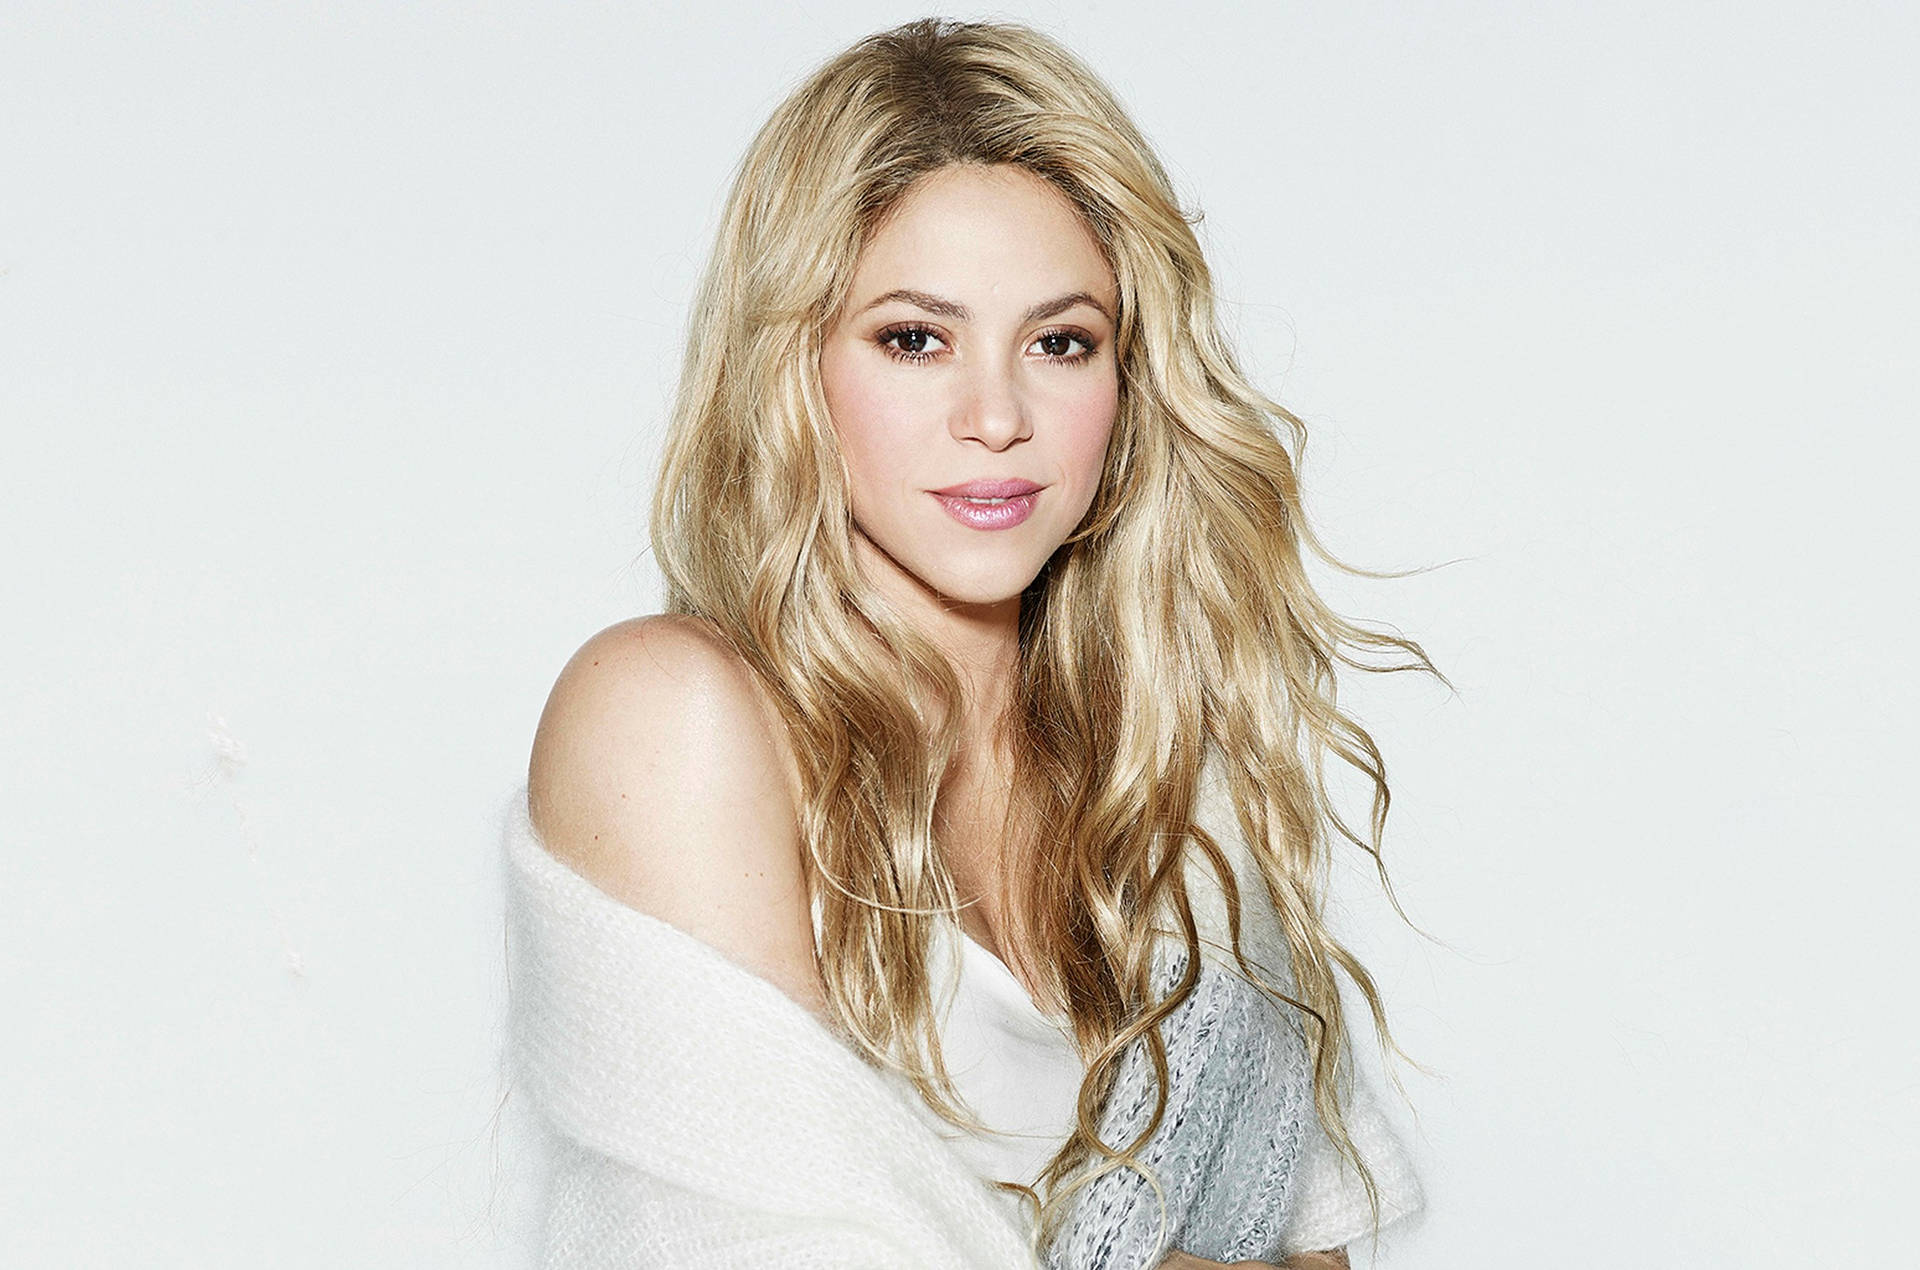 Music Shakira HD Wallpaper